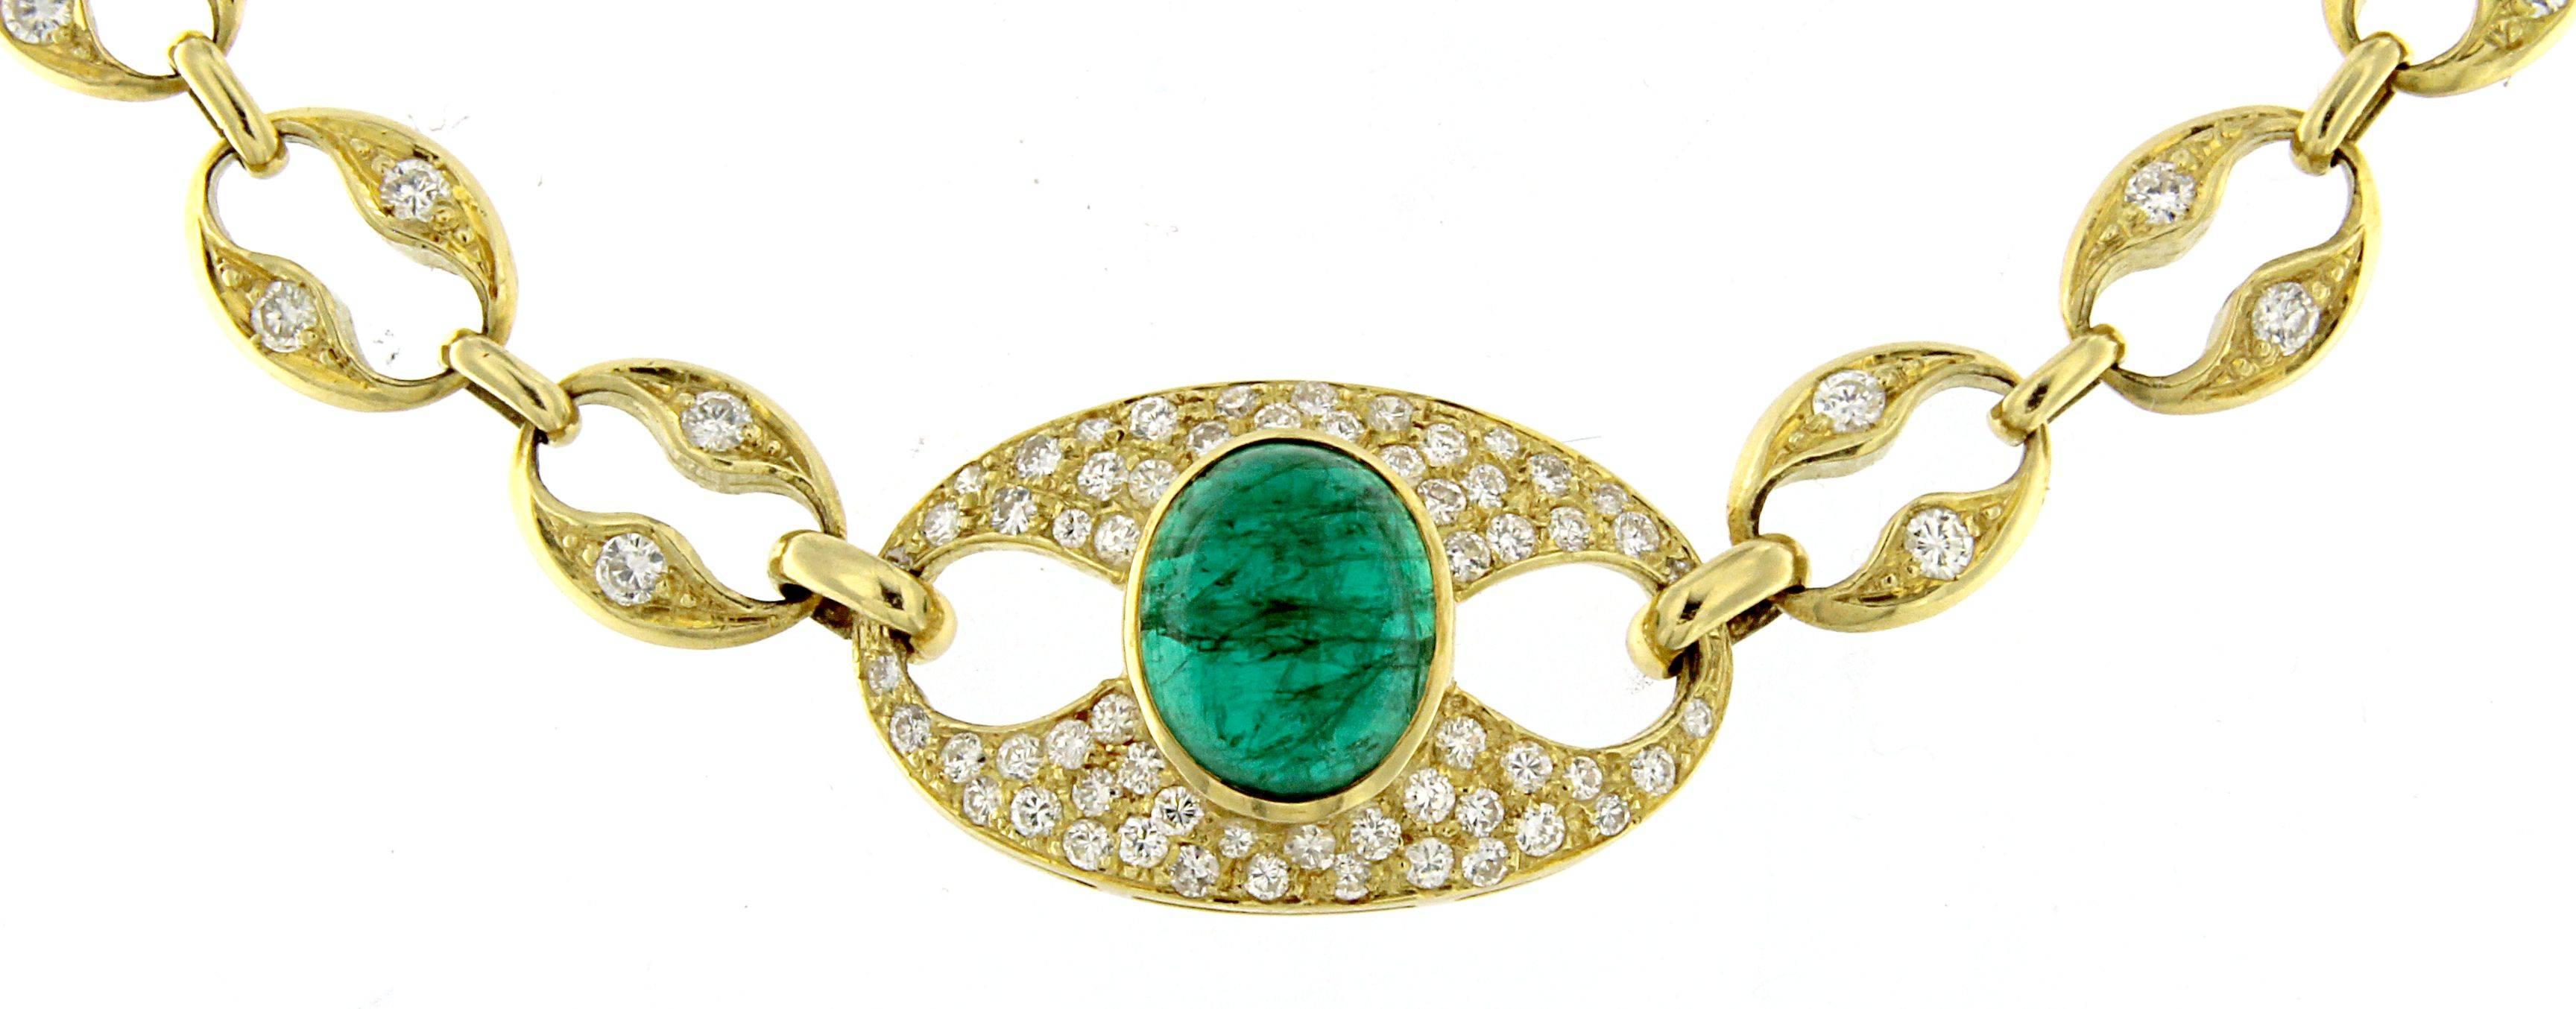 Elegante runde Halskette mit einem prächtigen Smaragd im Ovalschliff als zentrales Element, das den Rhythmus und das Gleichgewicht hervorhebt, das auch in der Kette wiedergegeben wird. Es ist vollständig handgefertigt und sehr raffiniert; seine